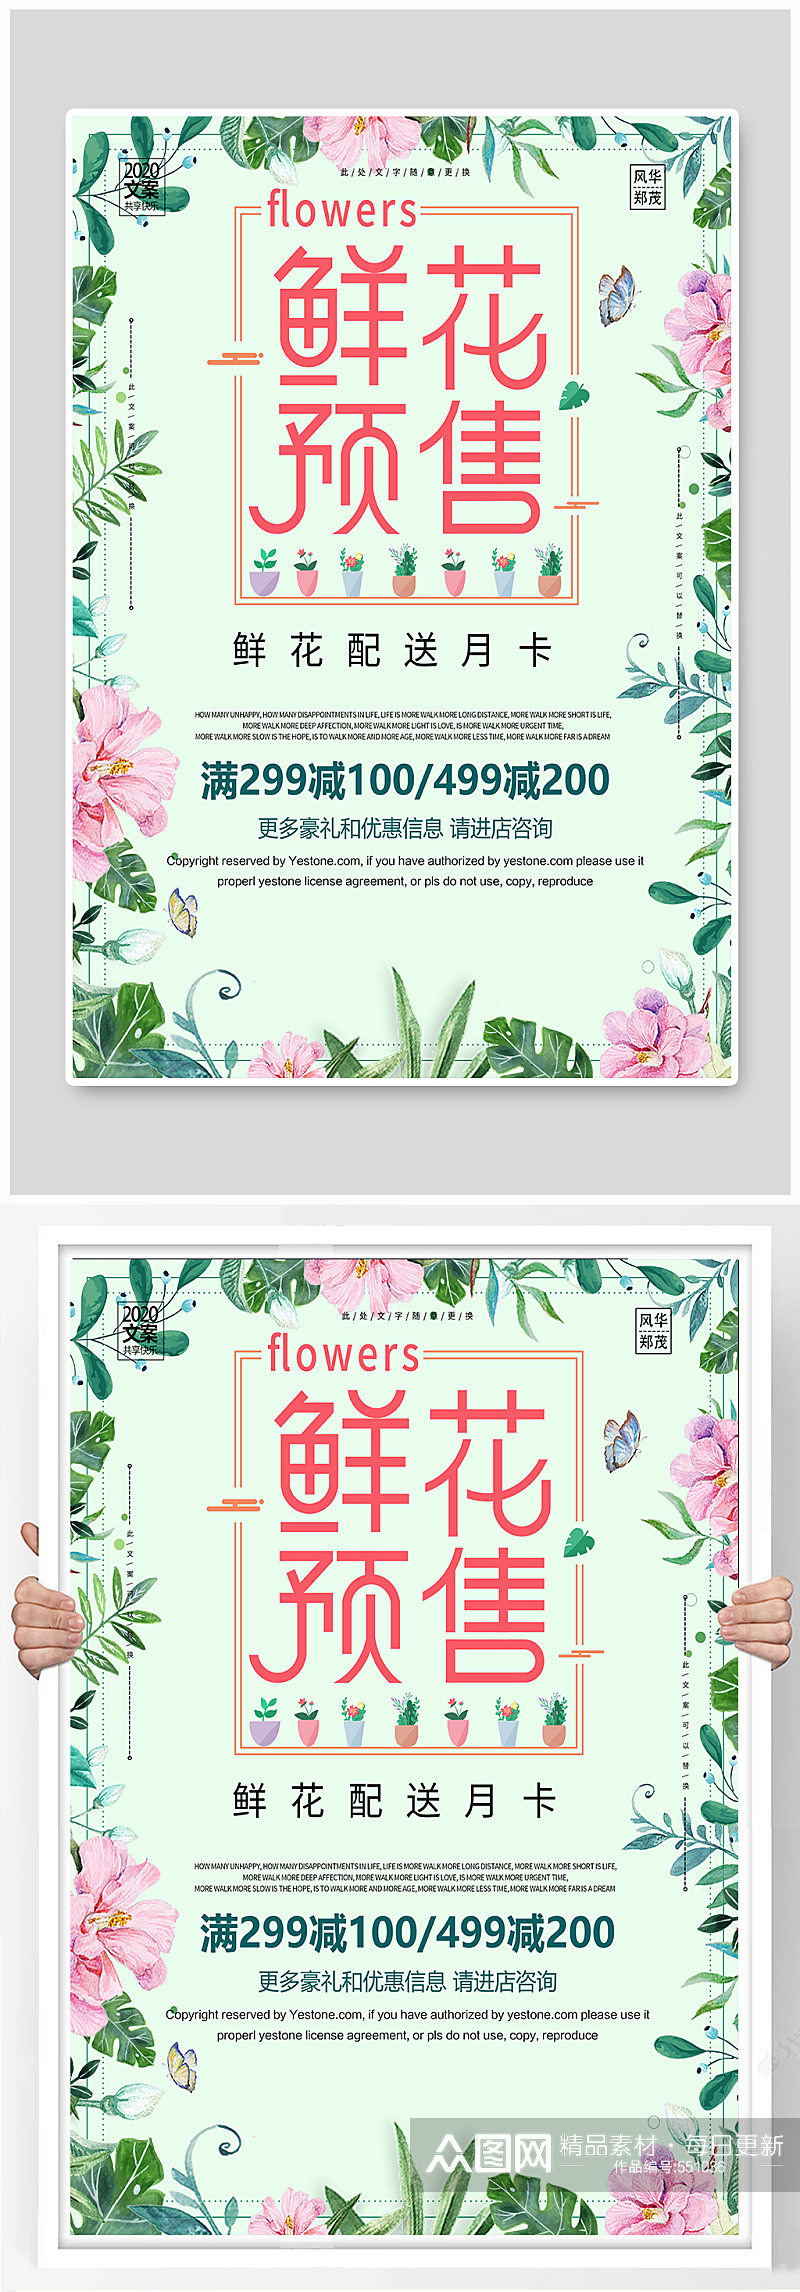 小清新鲜花预售预订配送月卡宣传海报素材